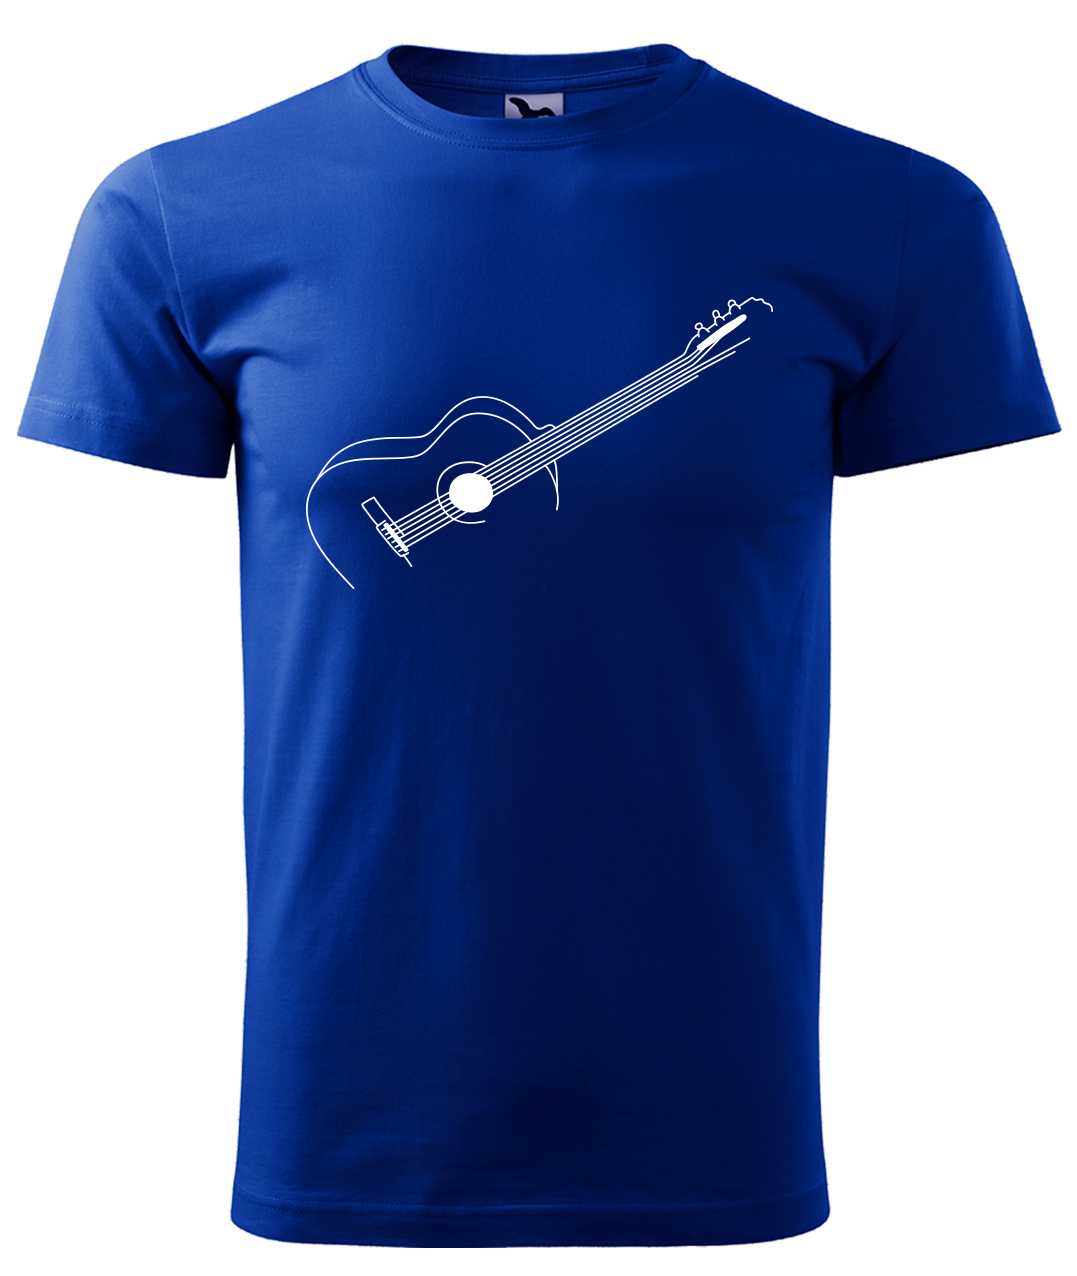 Dětské tričko s kytarou - Stylizovaná kytara Velikost: 4 roky / 110 cm, Barva: Královská modrá (05), Délka rukávu: Krátký rukáv